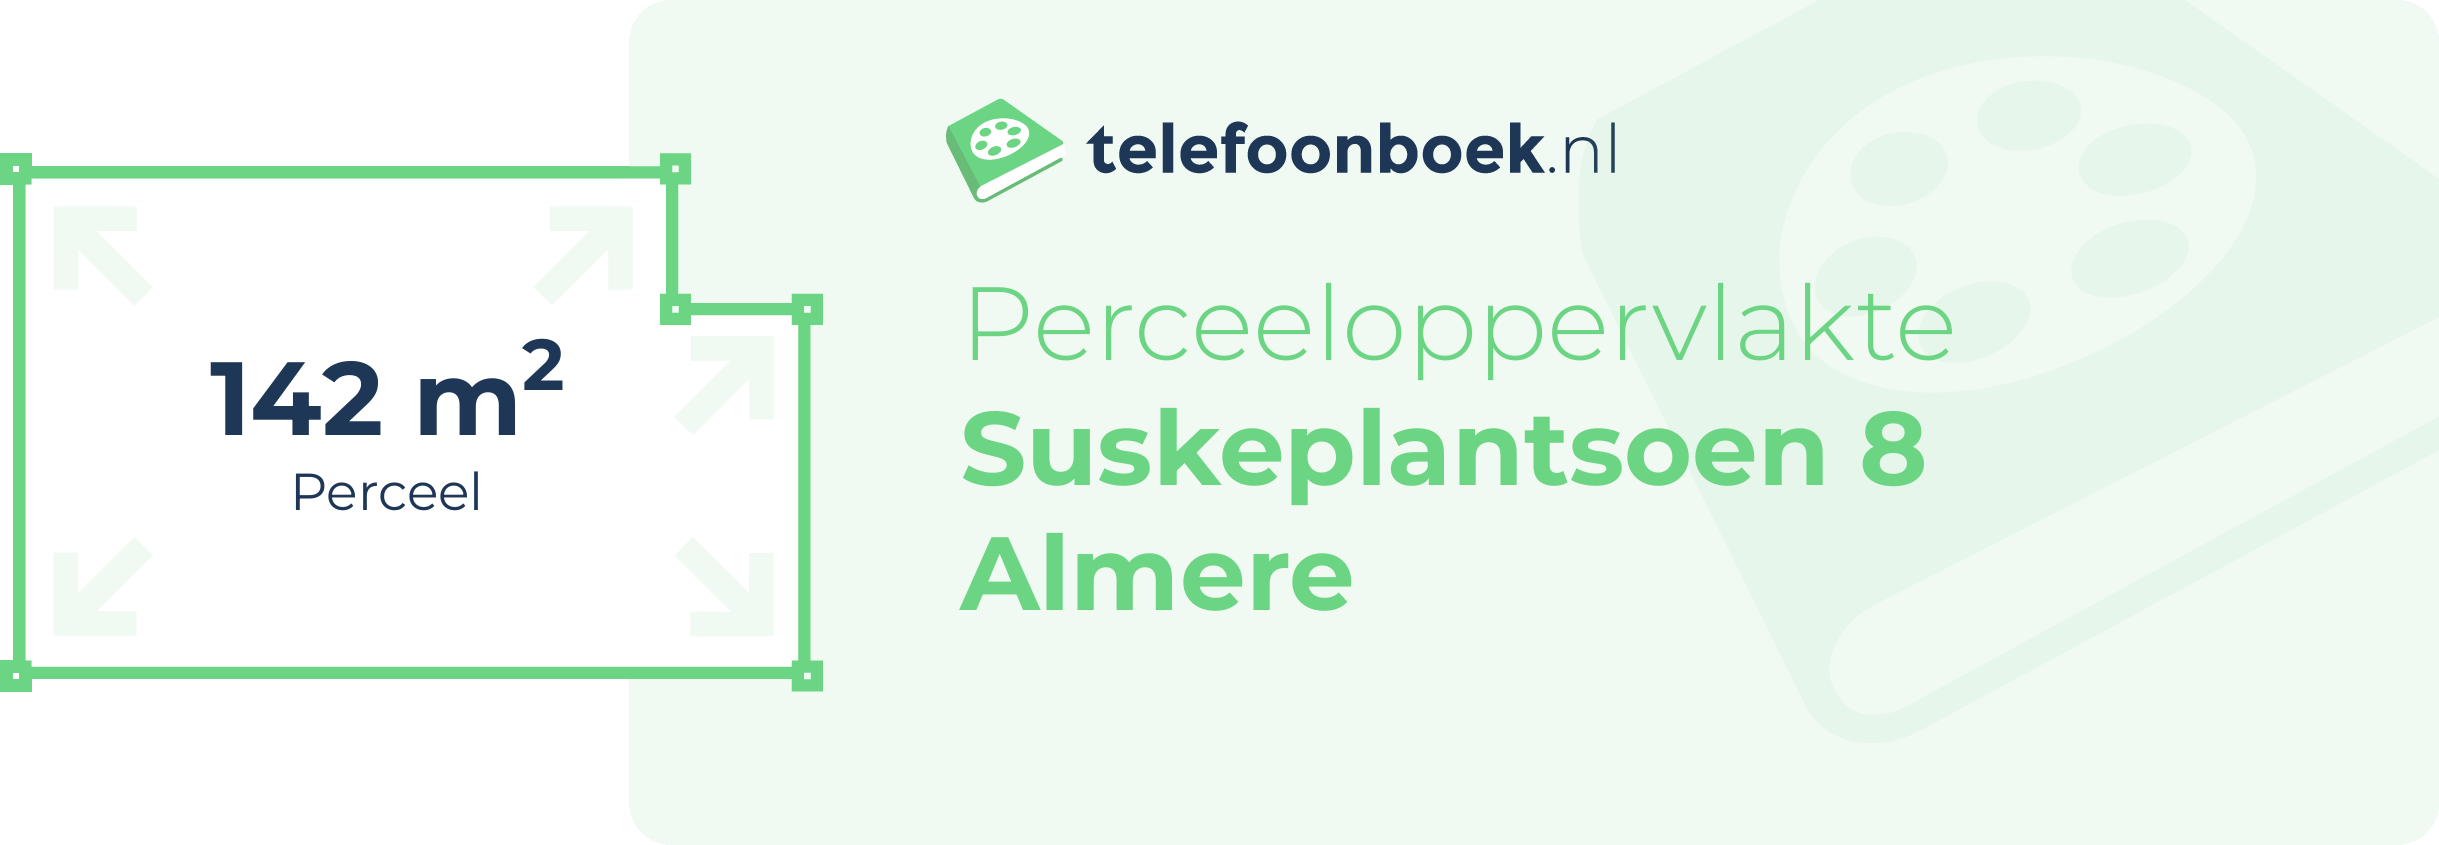 Perceeloppervlakte Suskeplantsoen 8 Almere